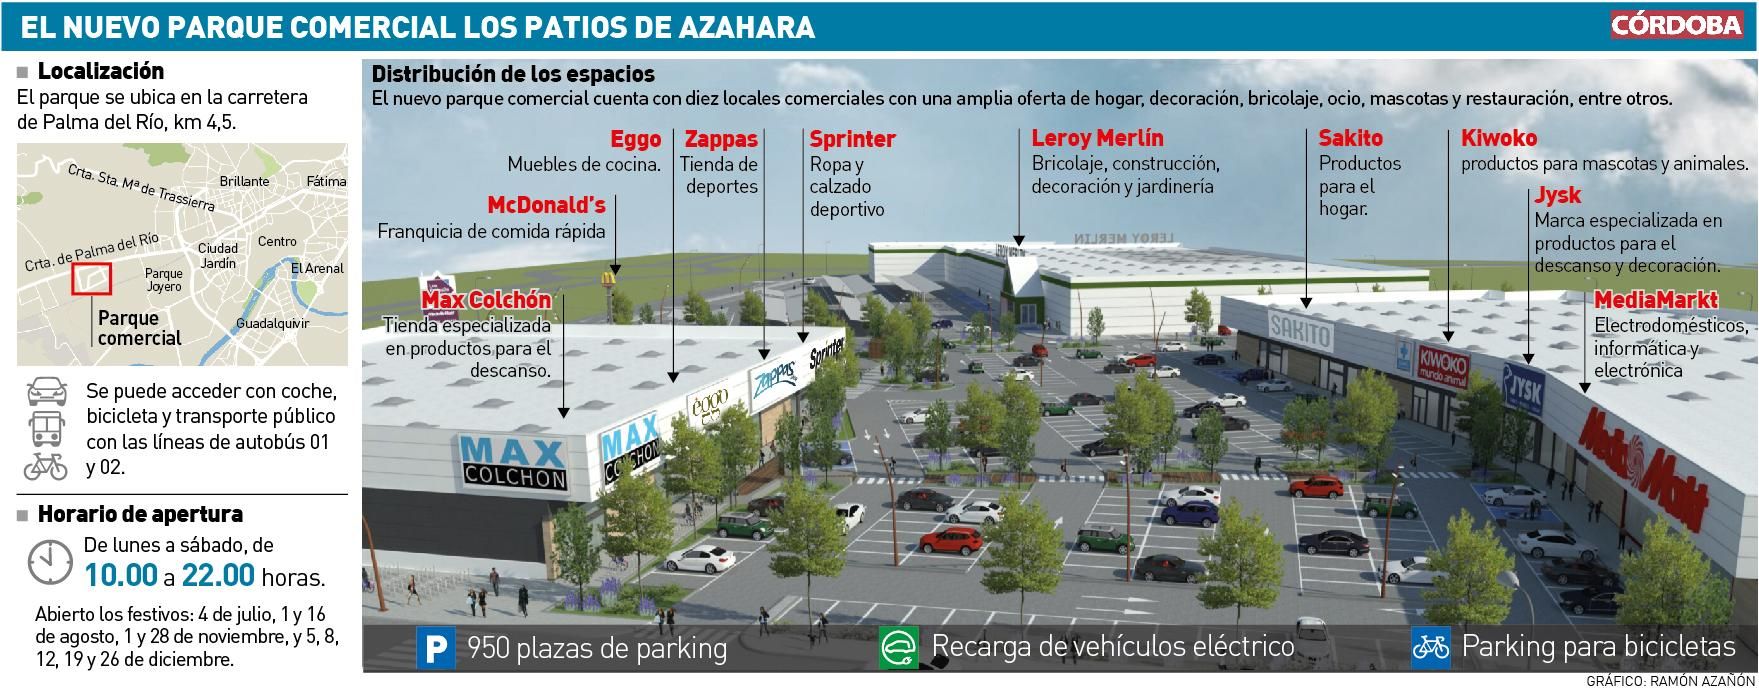 El nuevo parque comercial Los Patios de Azahara.